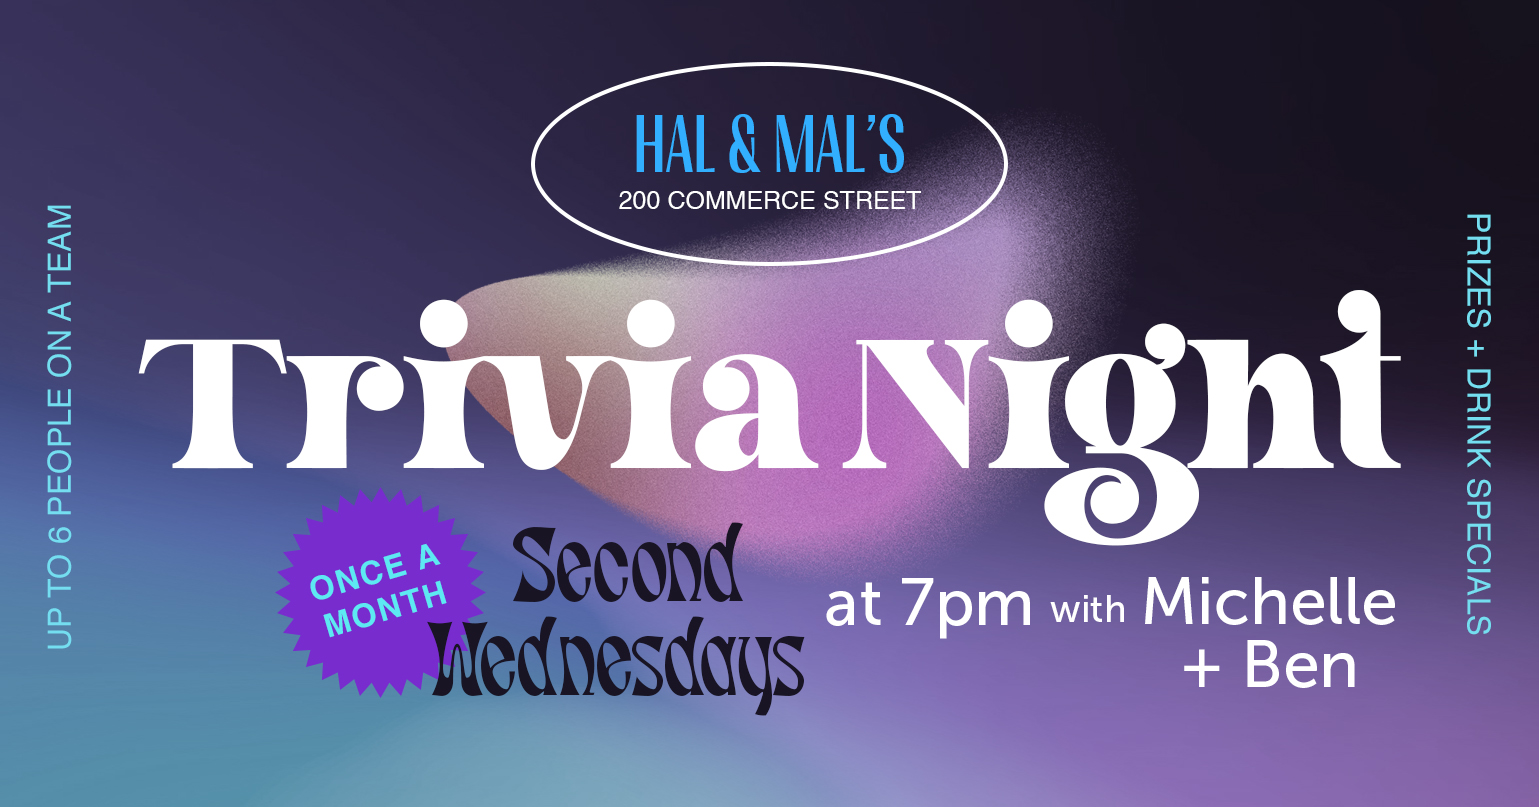 Trivia Night at Hal & Mal’s